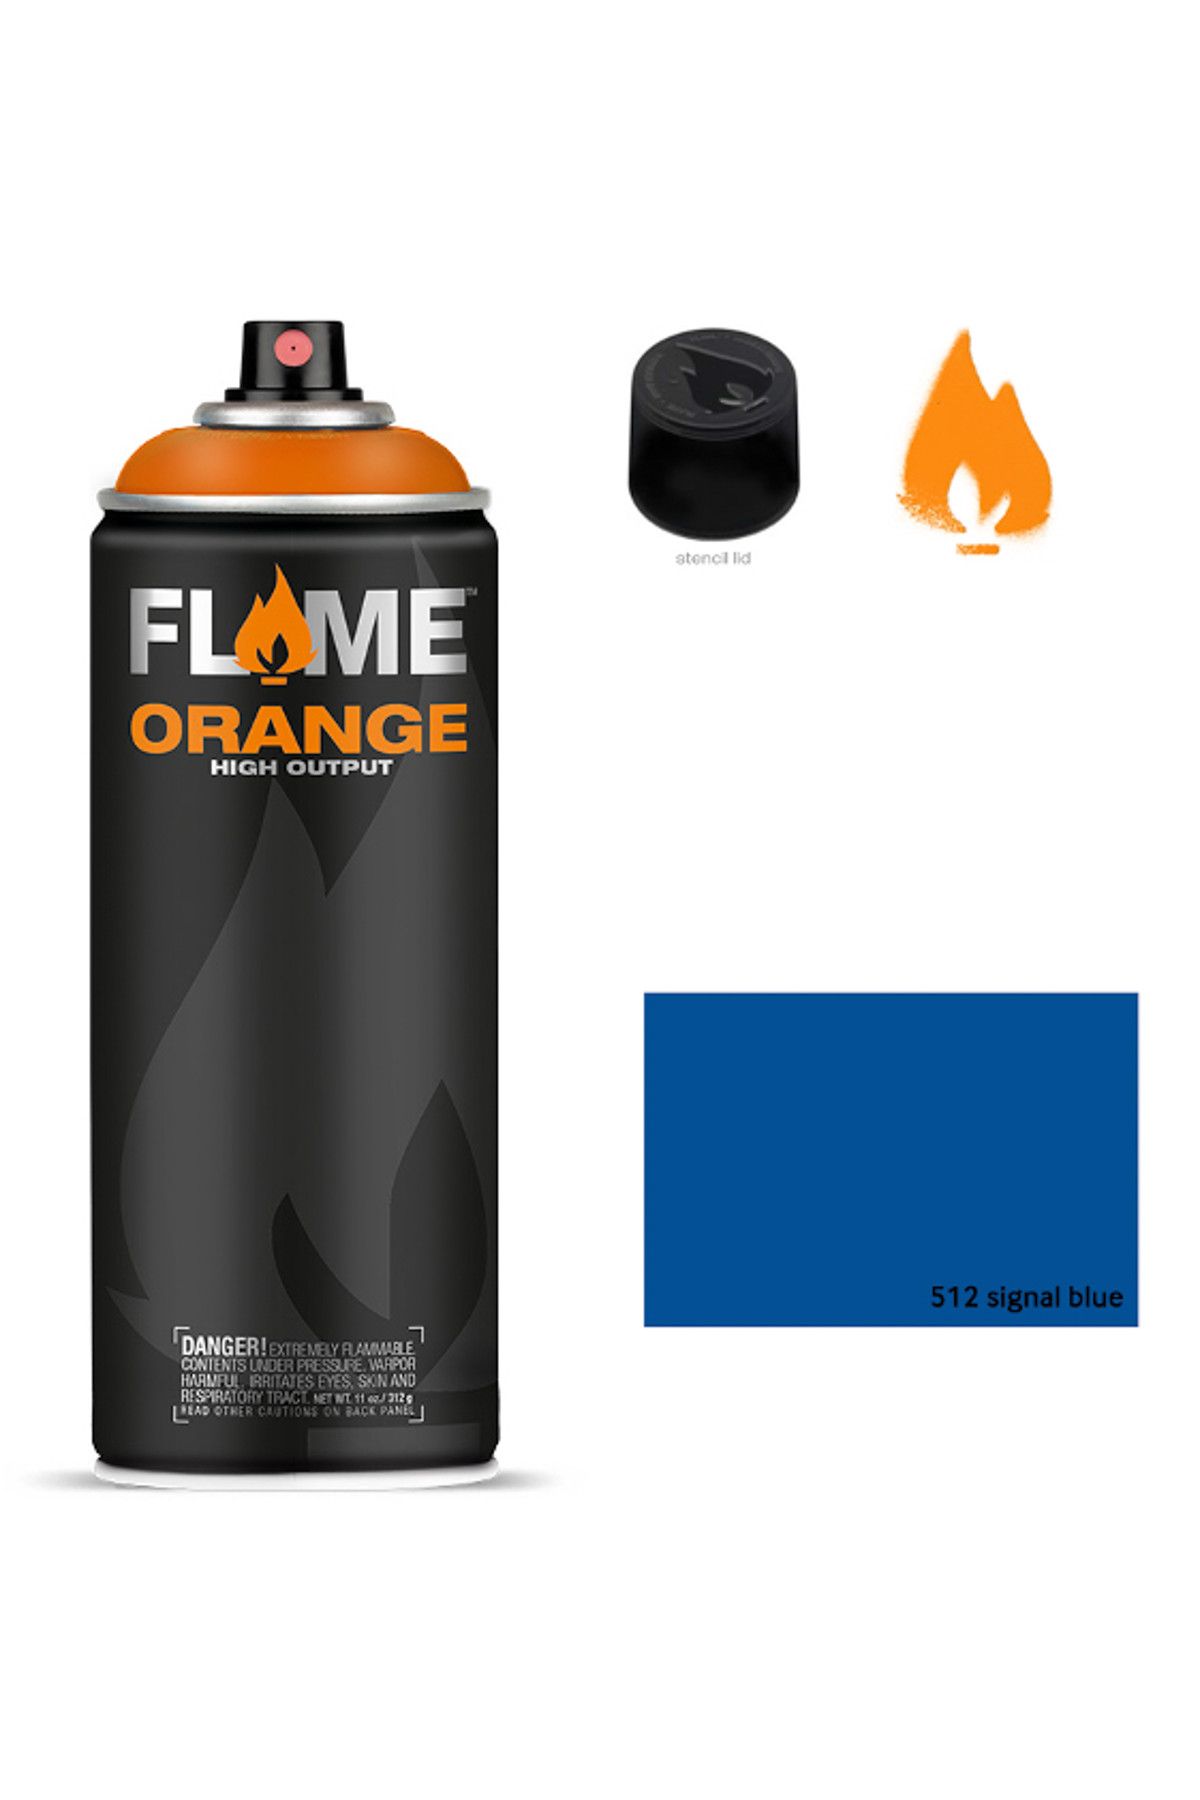 Flame Orange 400ml Sprey Boya N:512 Signal Blue